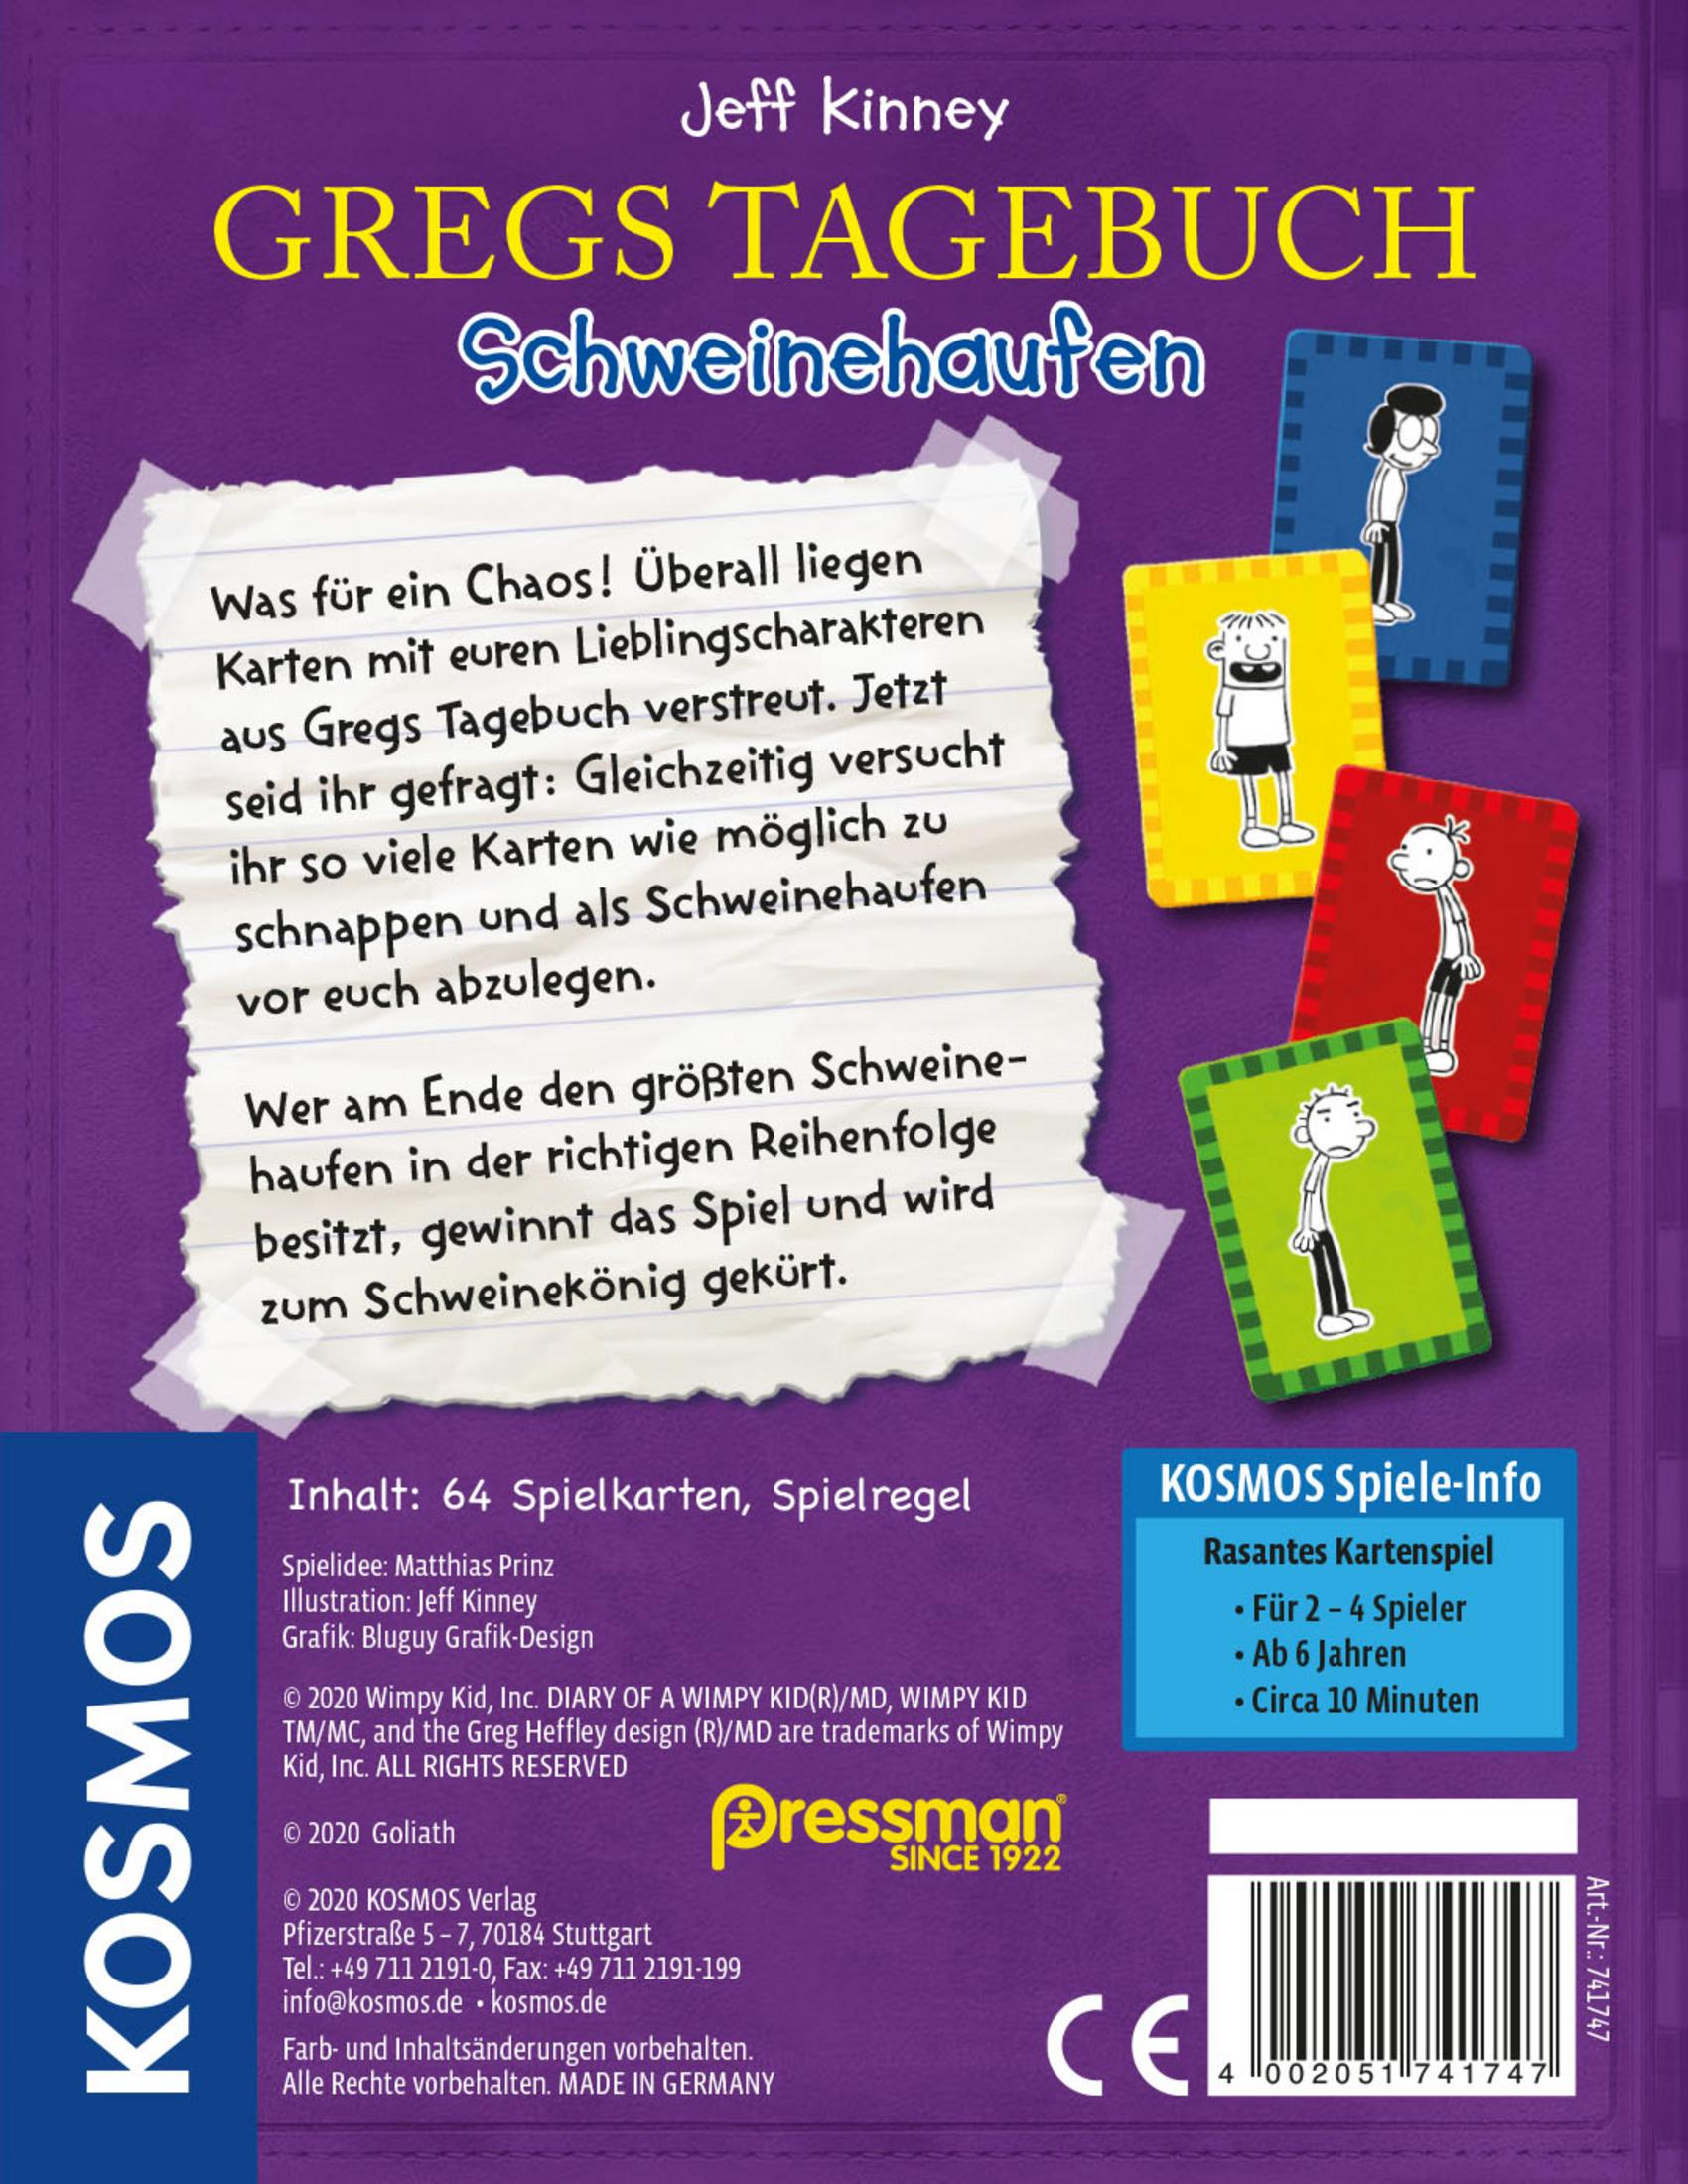 (KARTENSPIEL) Mehrfarbig Kartenspiel KOSMOS 741747 GREGS TAGEBUCH-SCHWEINEHAUFEN